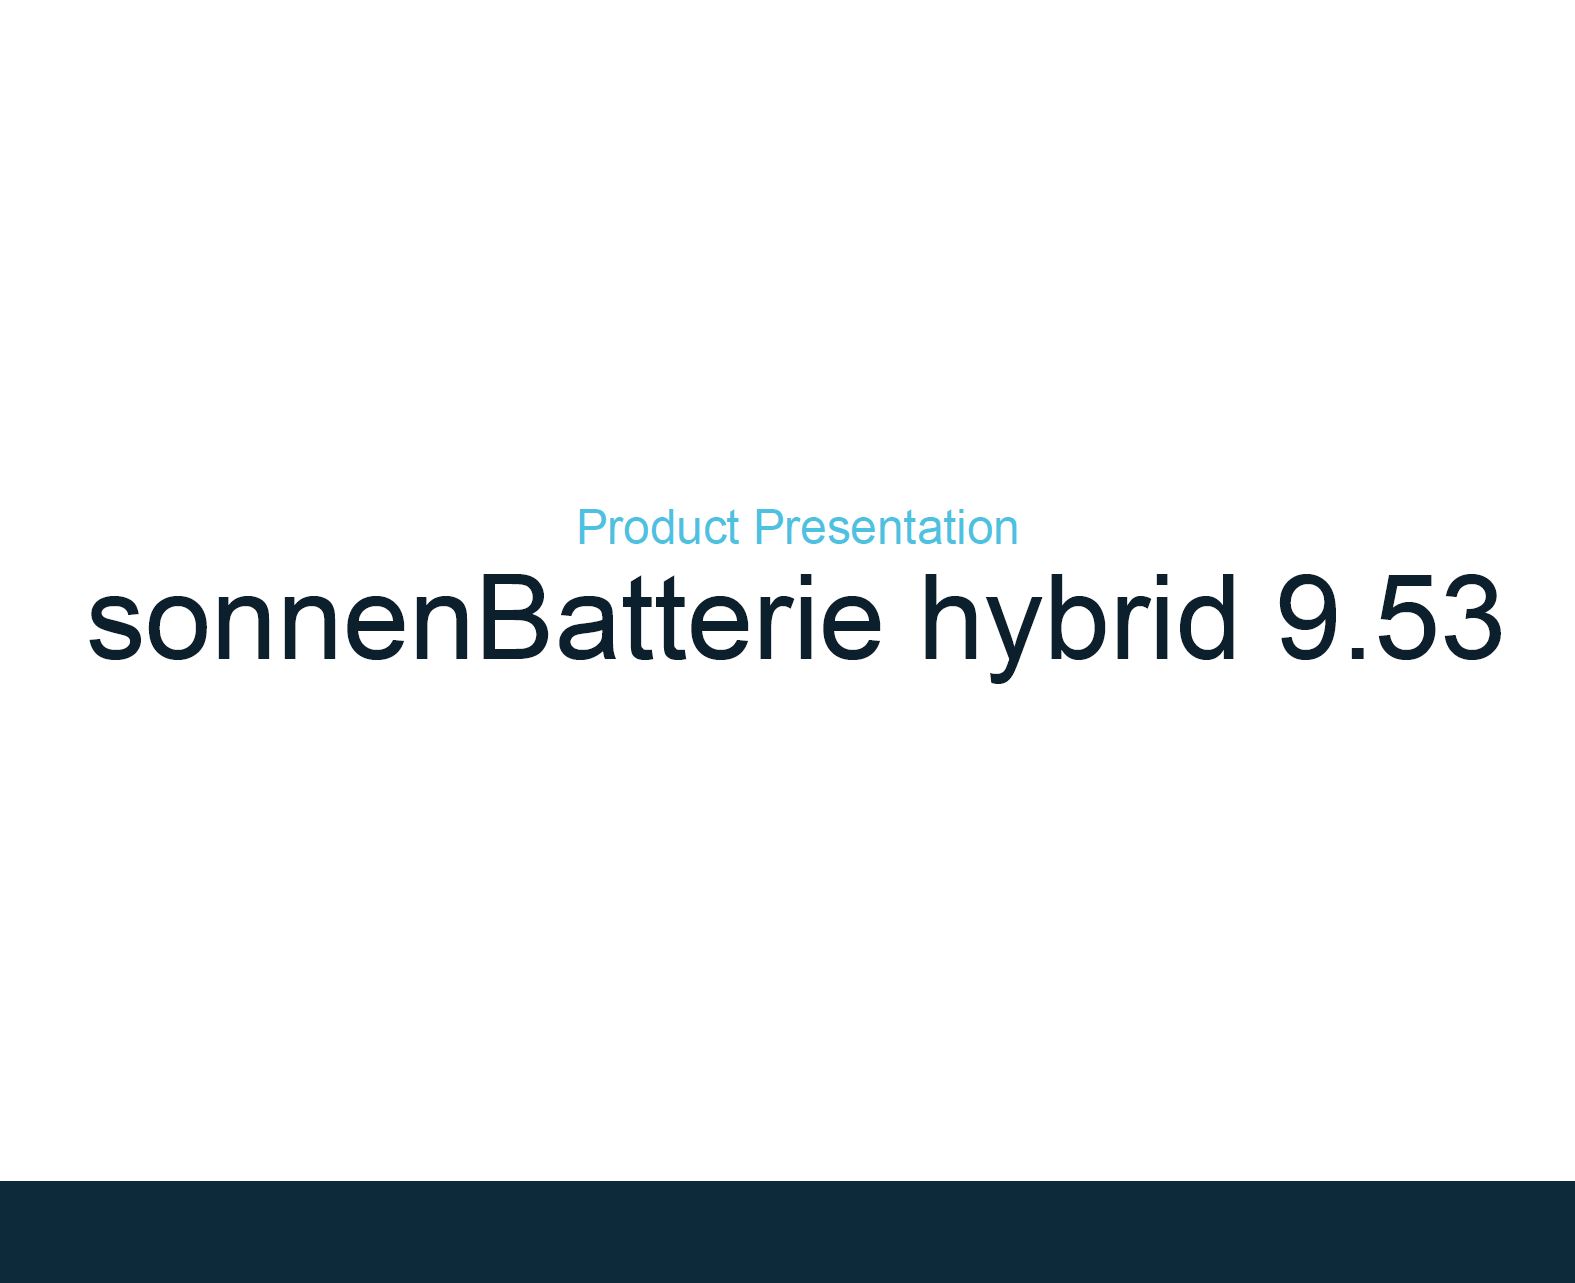 Sonnen Batterie Hybrid 9.53